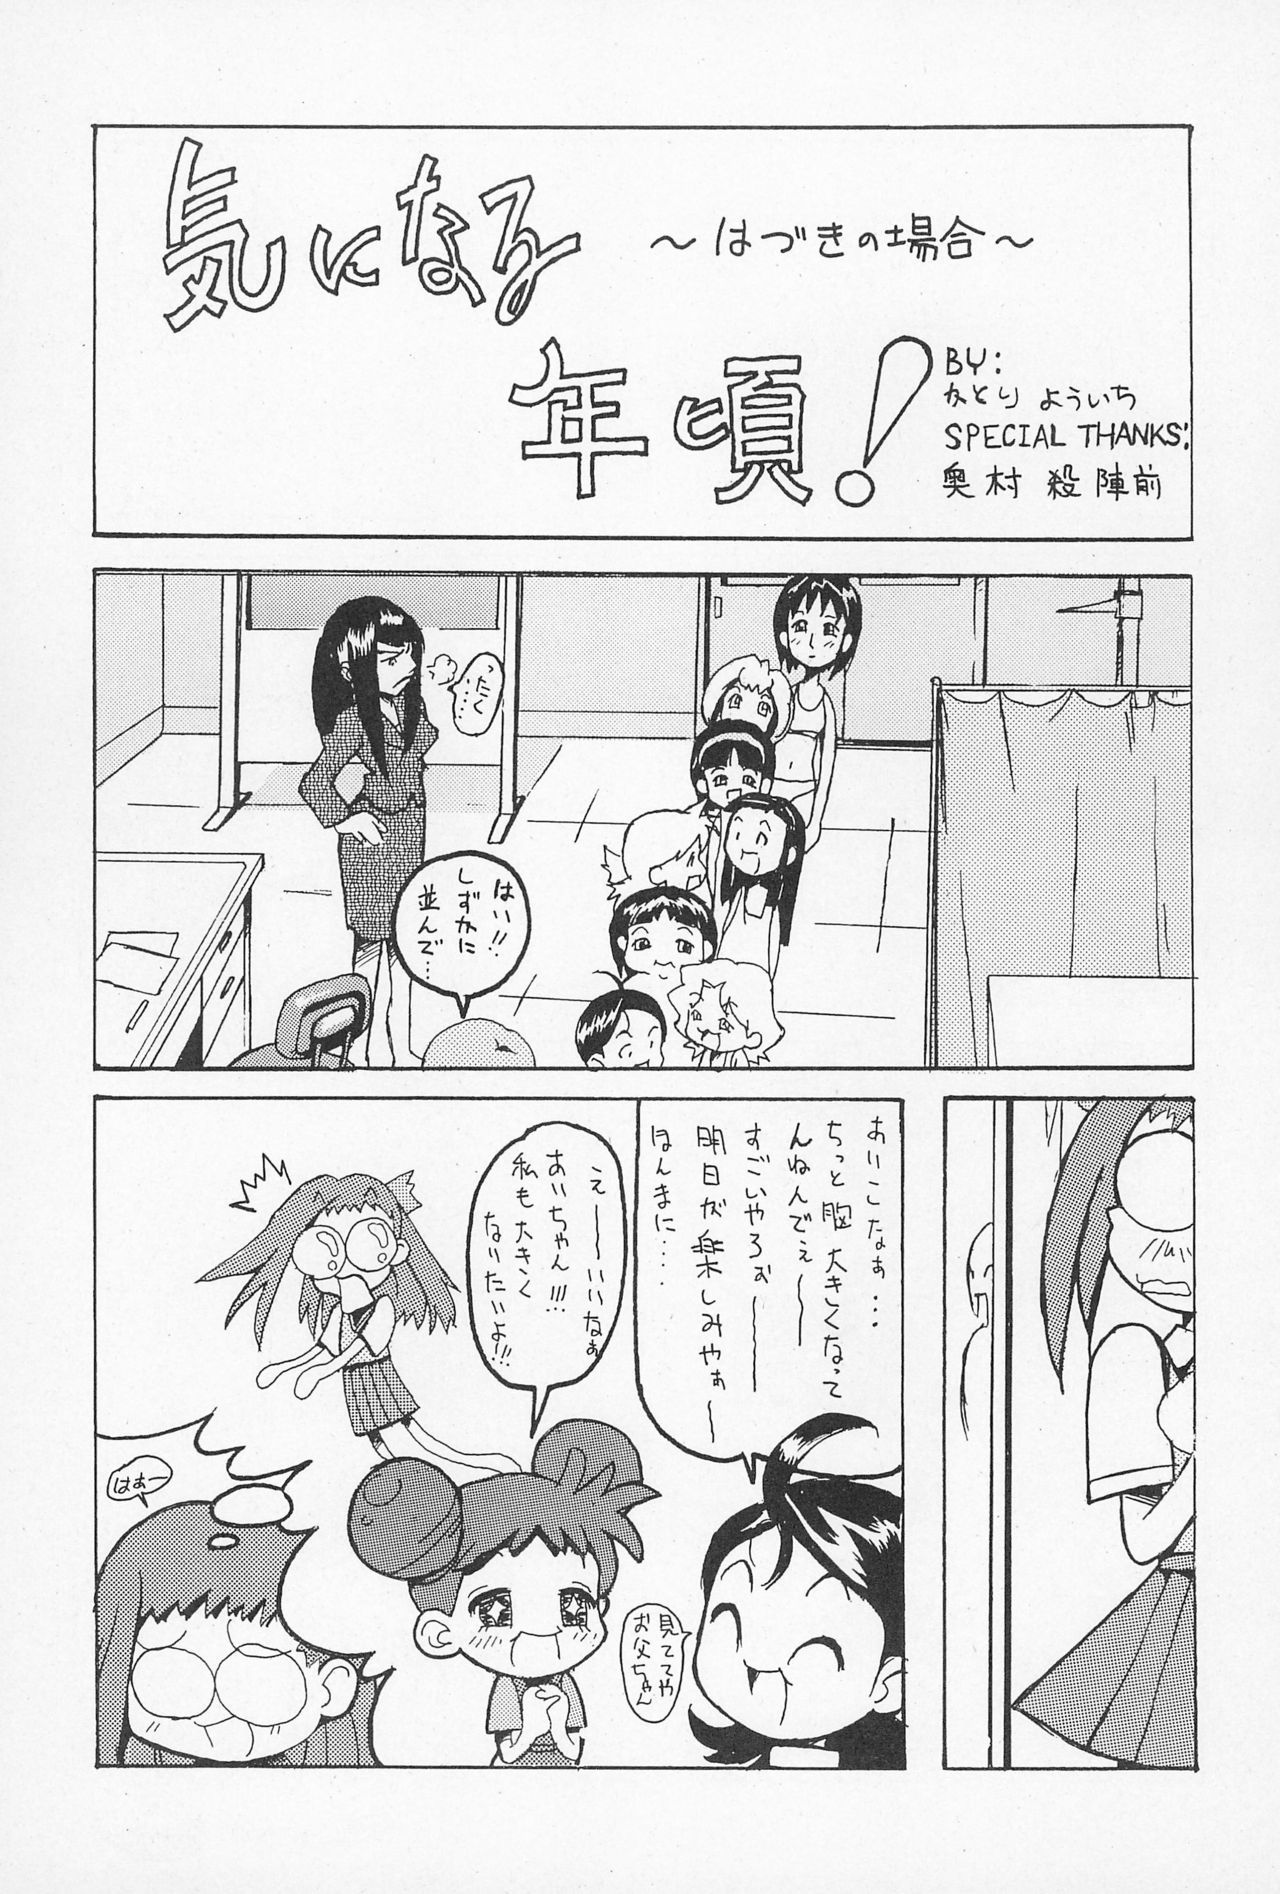 (CR25) [Nekketsu Kouenji Housoukyoku, KENIX (Katori Youichi, Ninnin!)] Doremi Fa So La Si Do (Ojamajo Doremi) page 11 full